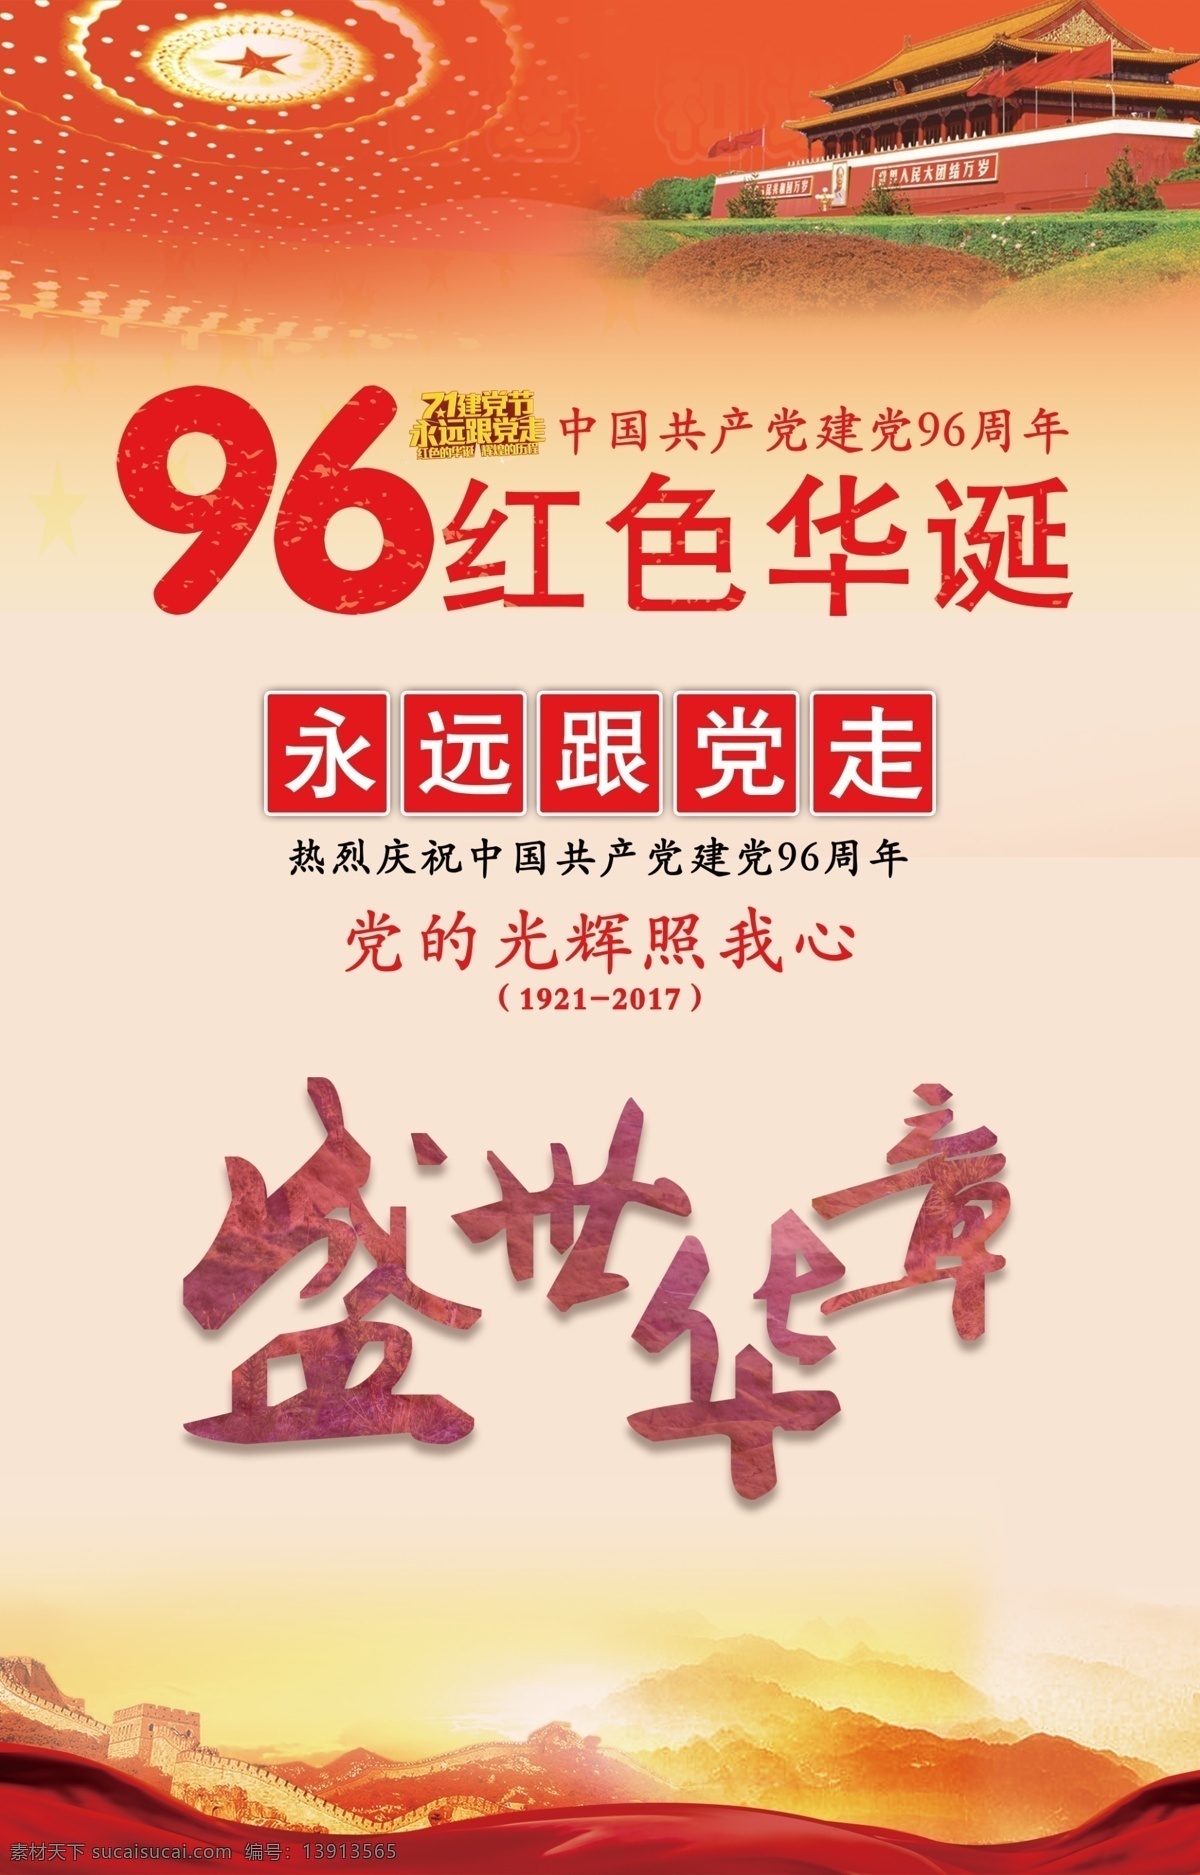 中共 建党 周年 海报 华诞 红色 七一 节日 党的生日 户外宣传单 党的光辉 96周年